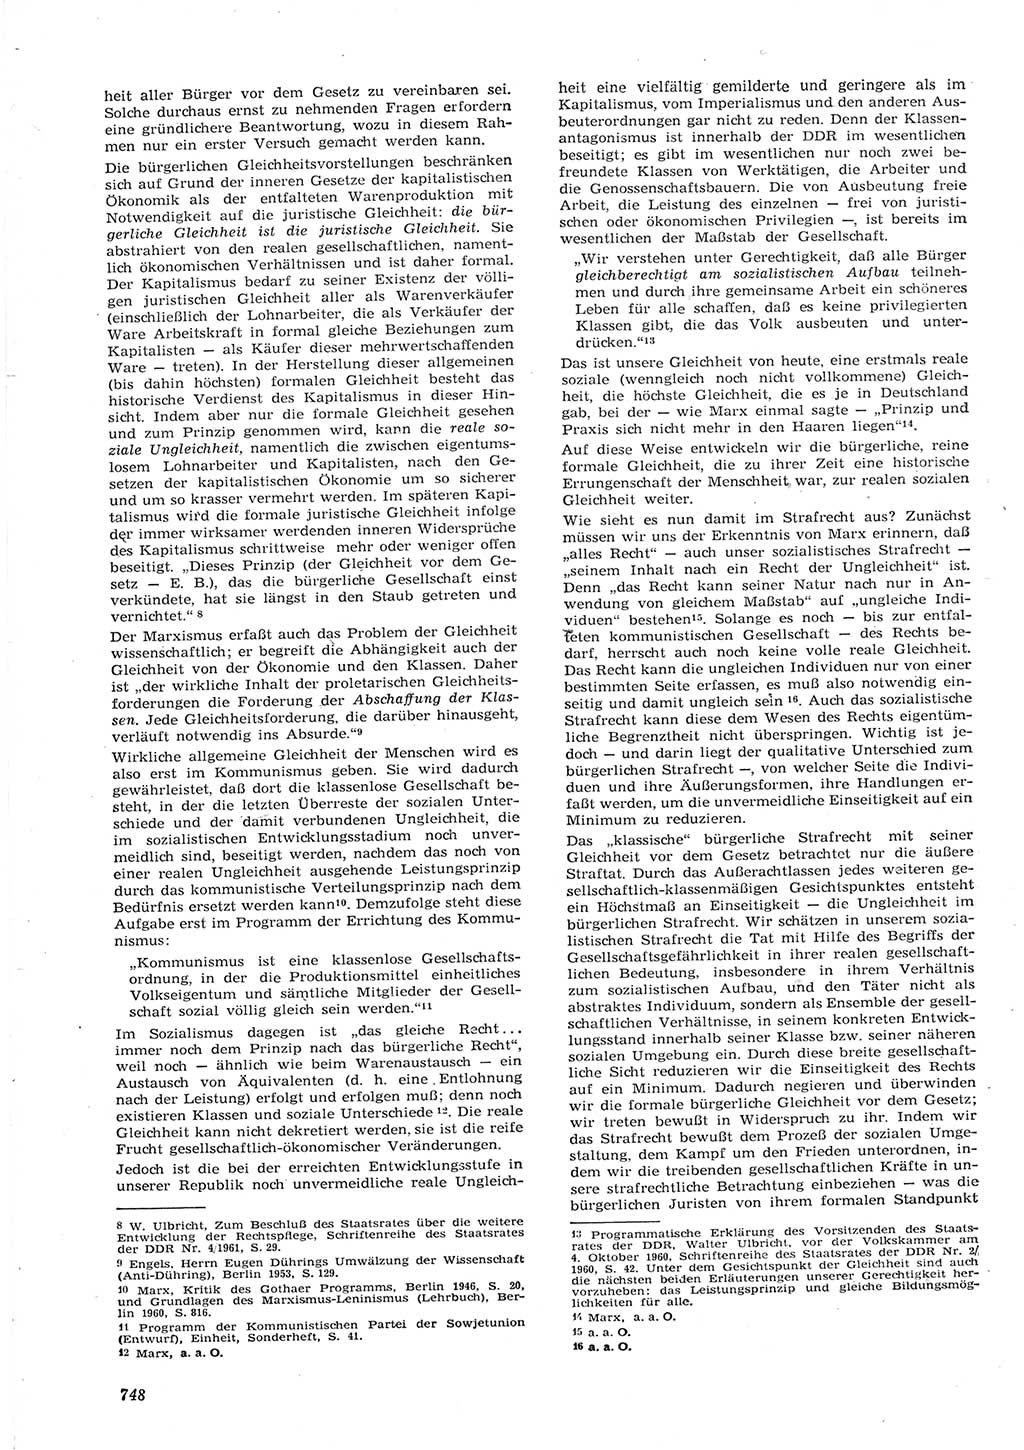 Neue Justiz (NJ), Zeitschrift für Recht und Rechtswissenschaft [Deutsche Demokratische Republik (DDR)], 15. Jahrgang 1961, Seite 748 (NJ DDR 1961, S. 748)